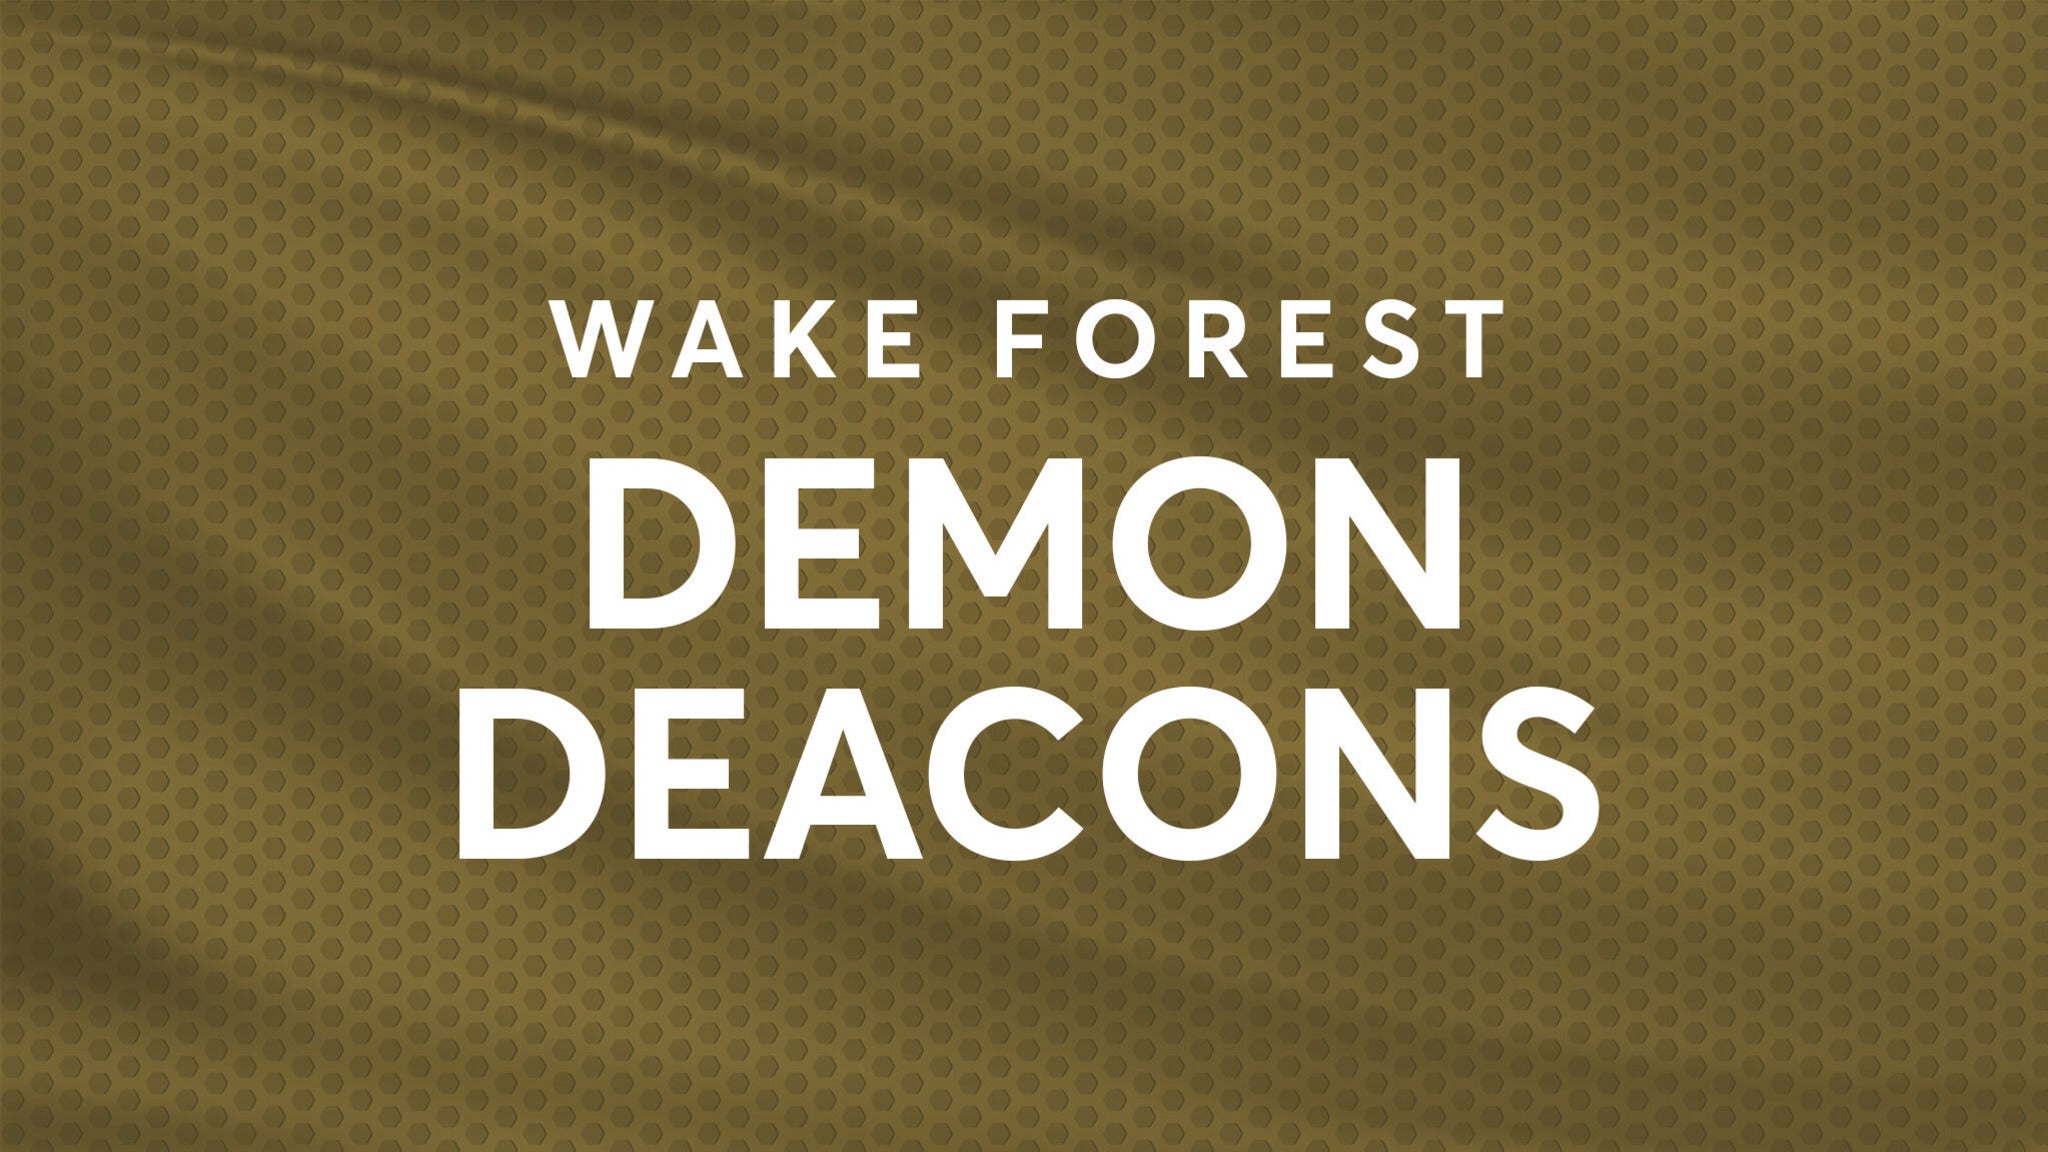 Wake Forest Demon Deacons Baseball presale information on freepresalepasswords.com